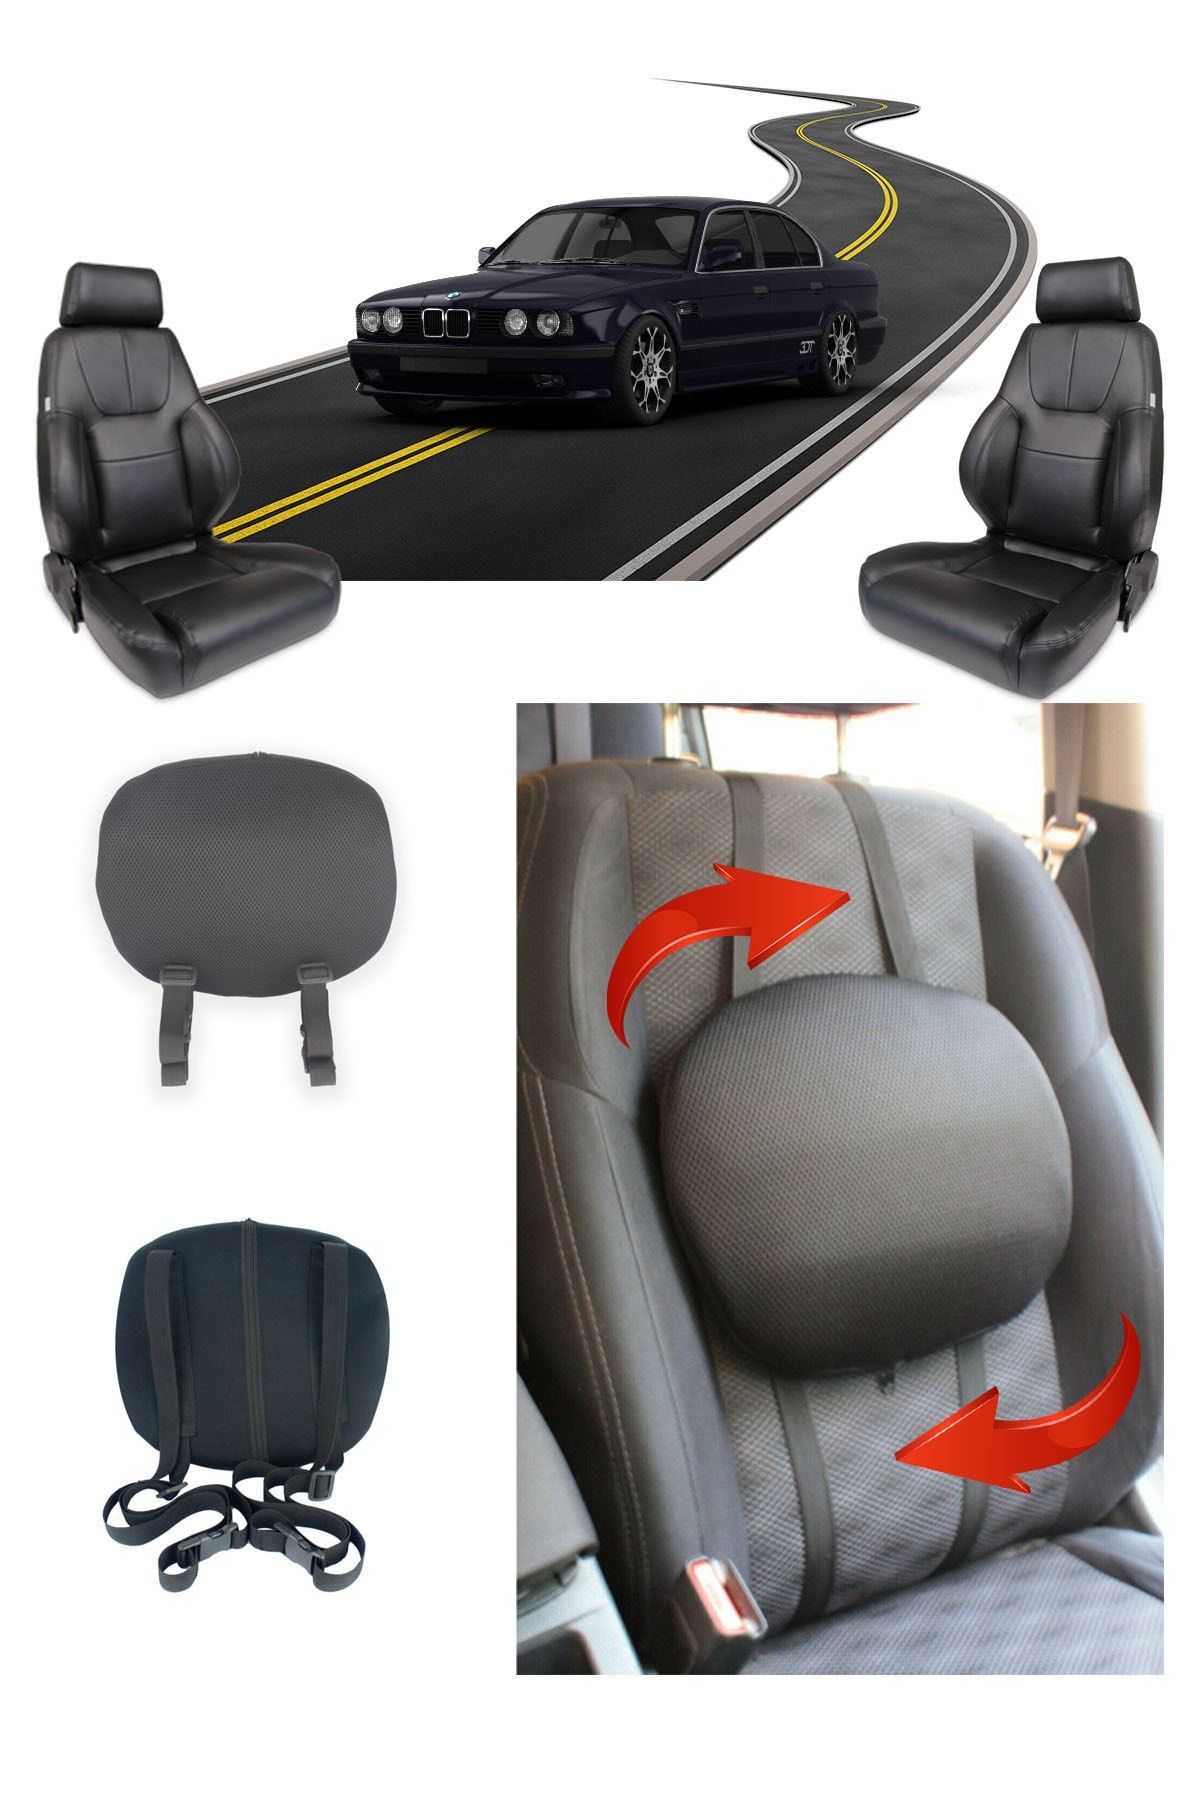 Ankaflex Araç Koltuk Bel Destek Minderi Oto Araba Sırt Dayama Yastığı Sandalye Minderi